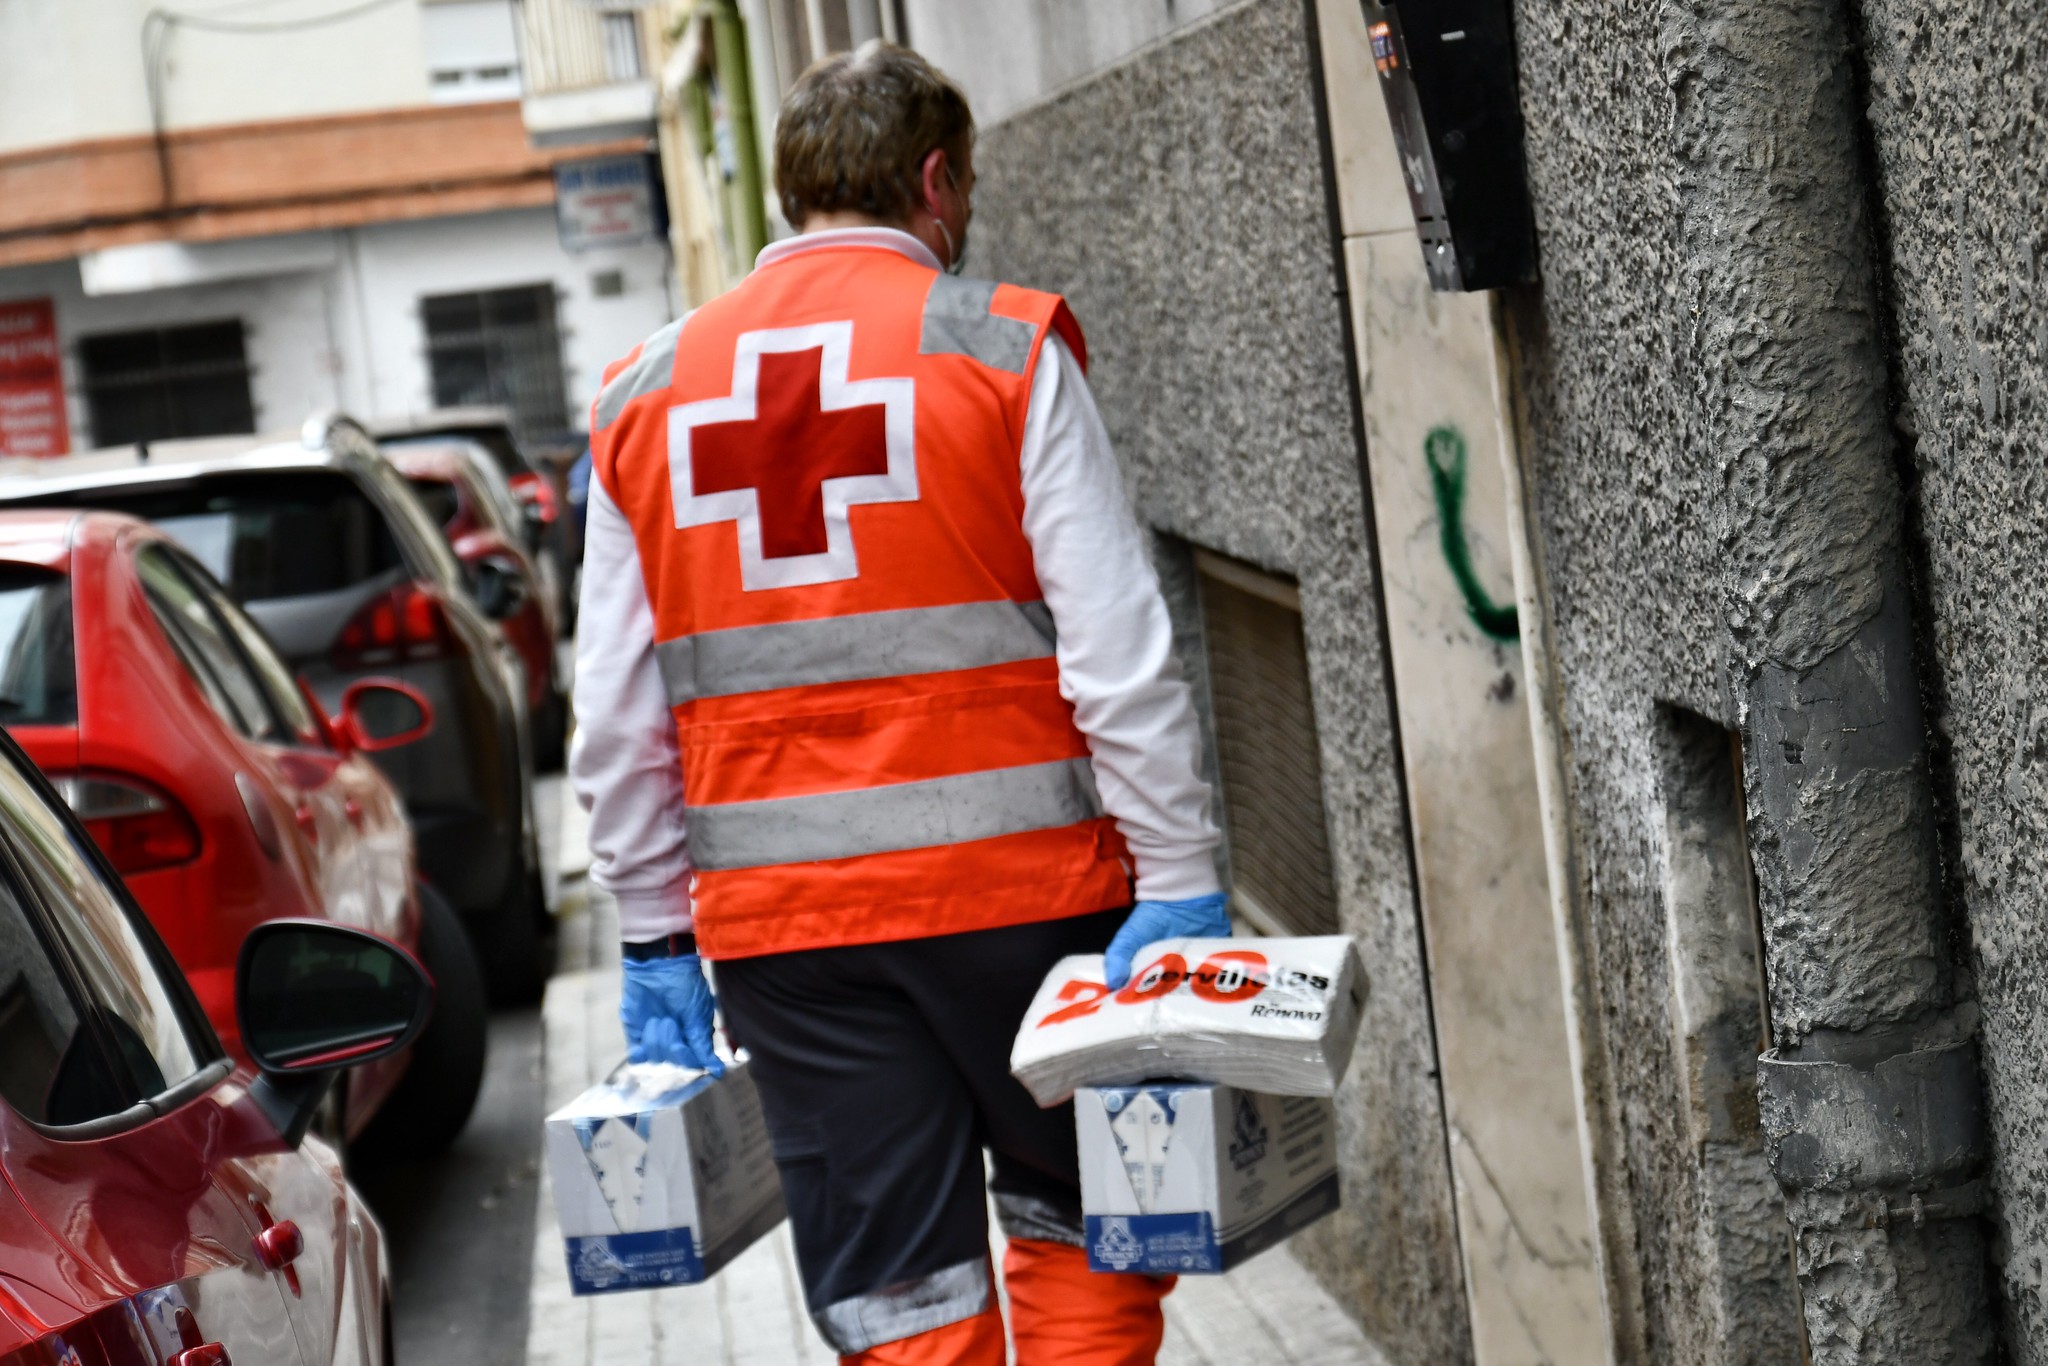 Cruz Roja registra el incremento anual de voluntariado más alto de su historia